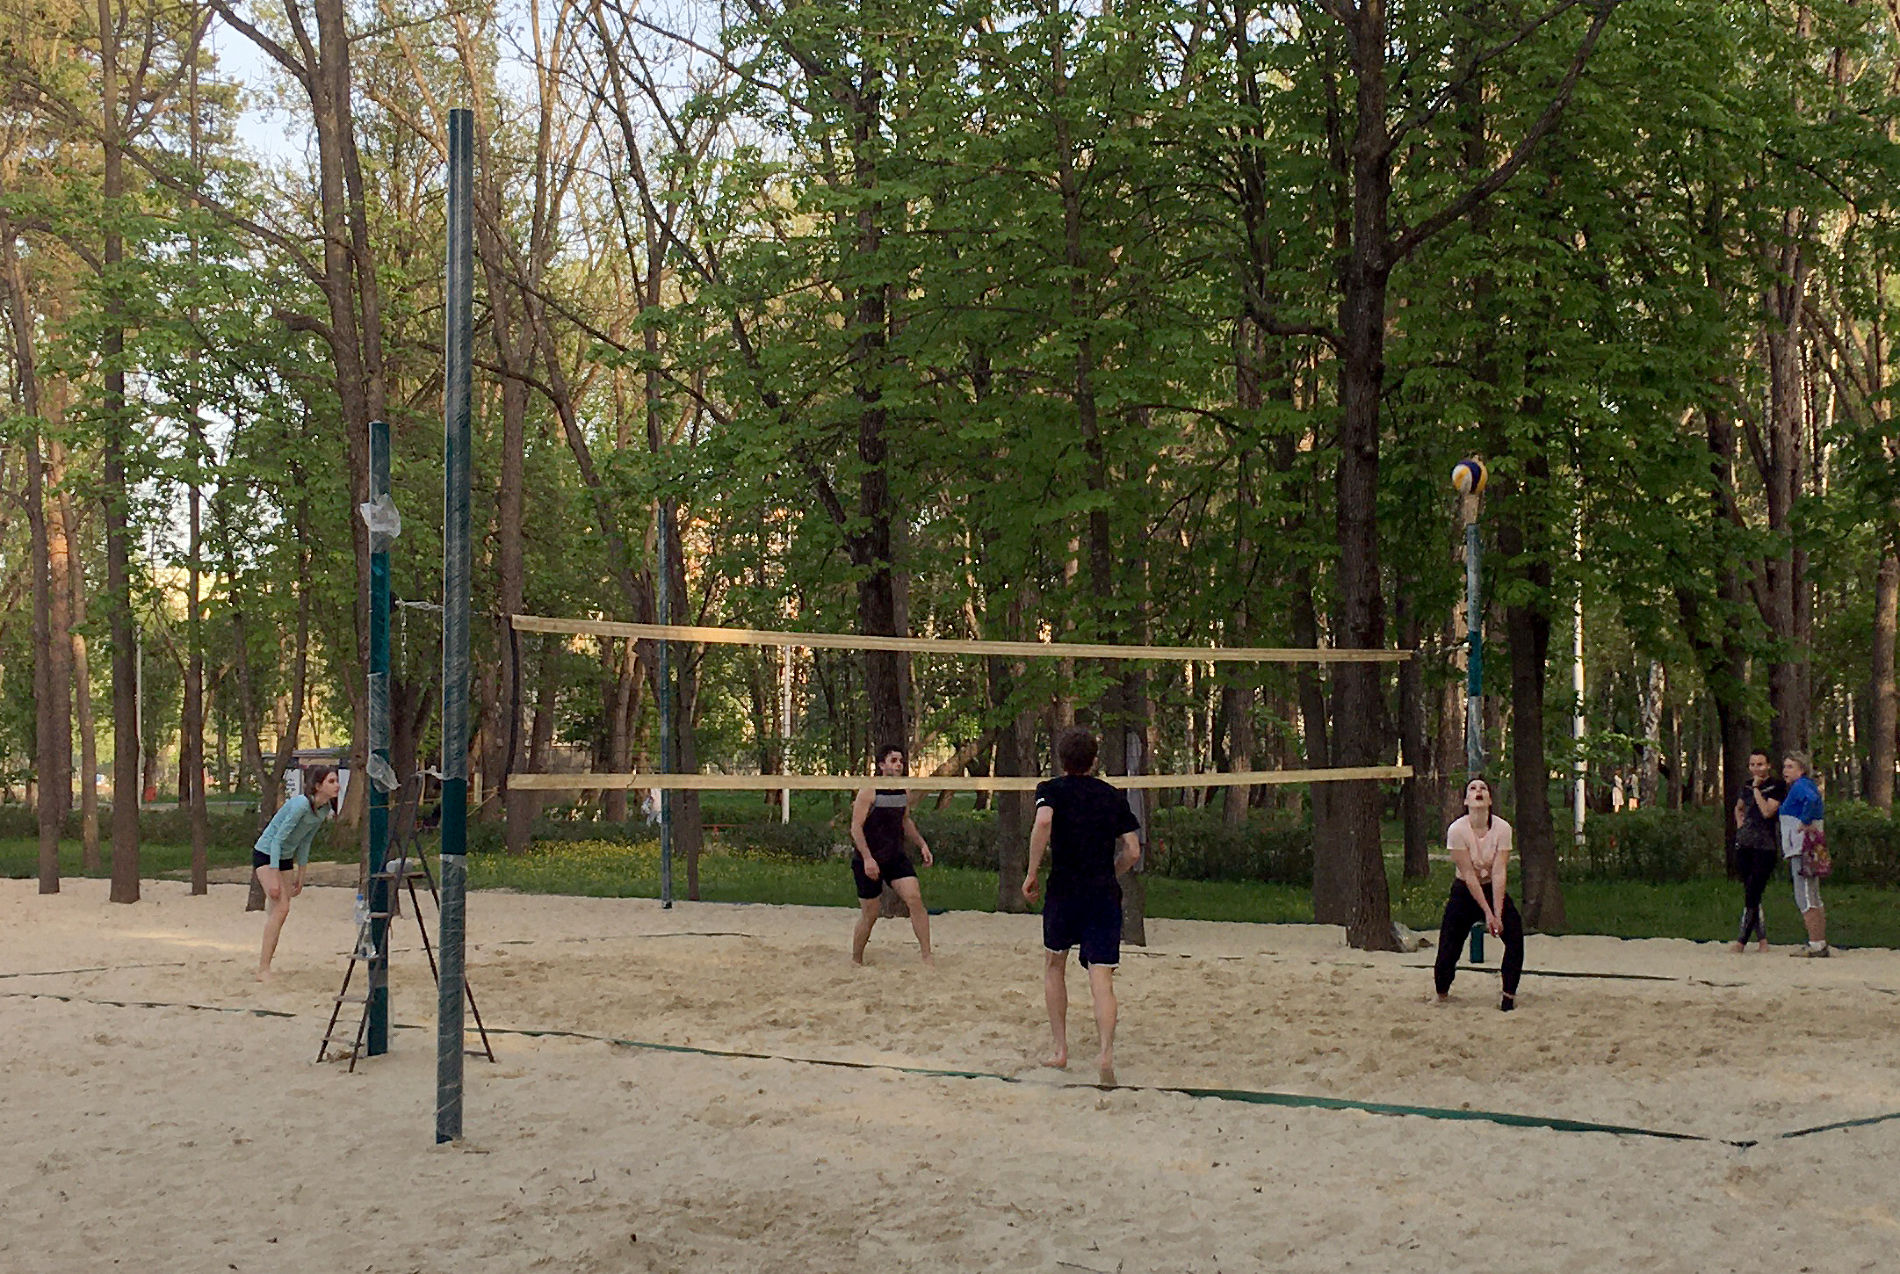 Да и парковая волейбольная площадка вполне похожа на кадр из презентации © Фото Тимура Рыжкова, Юга.ру